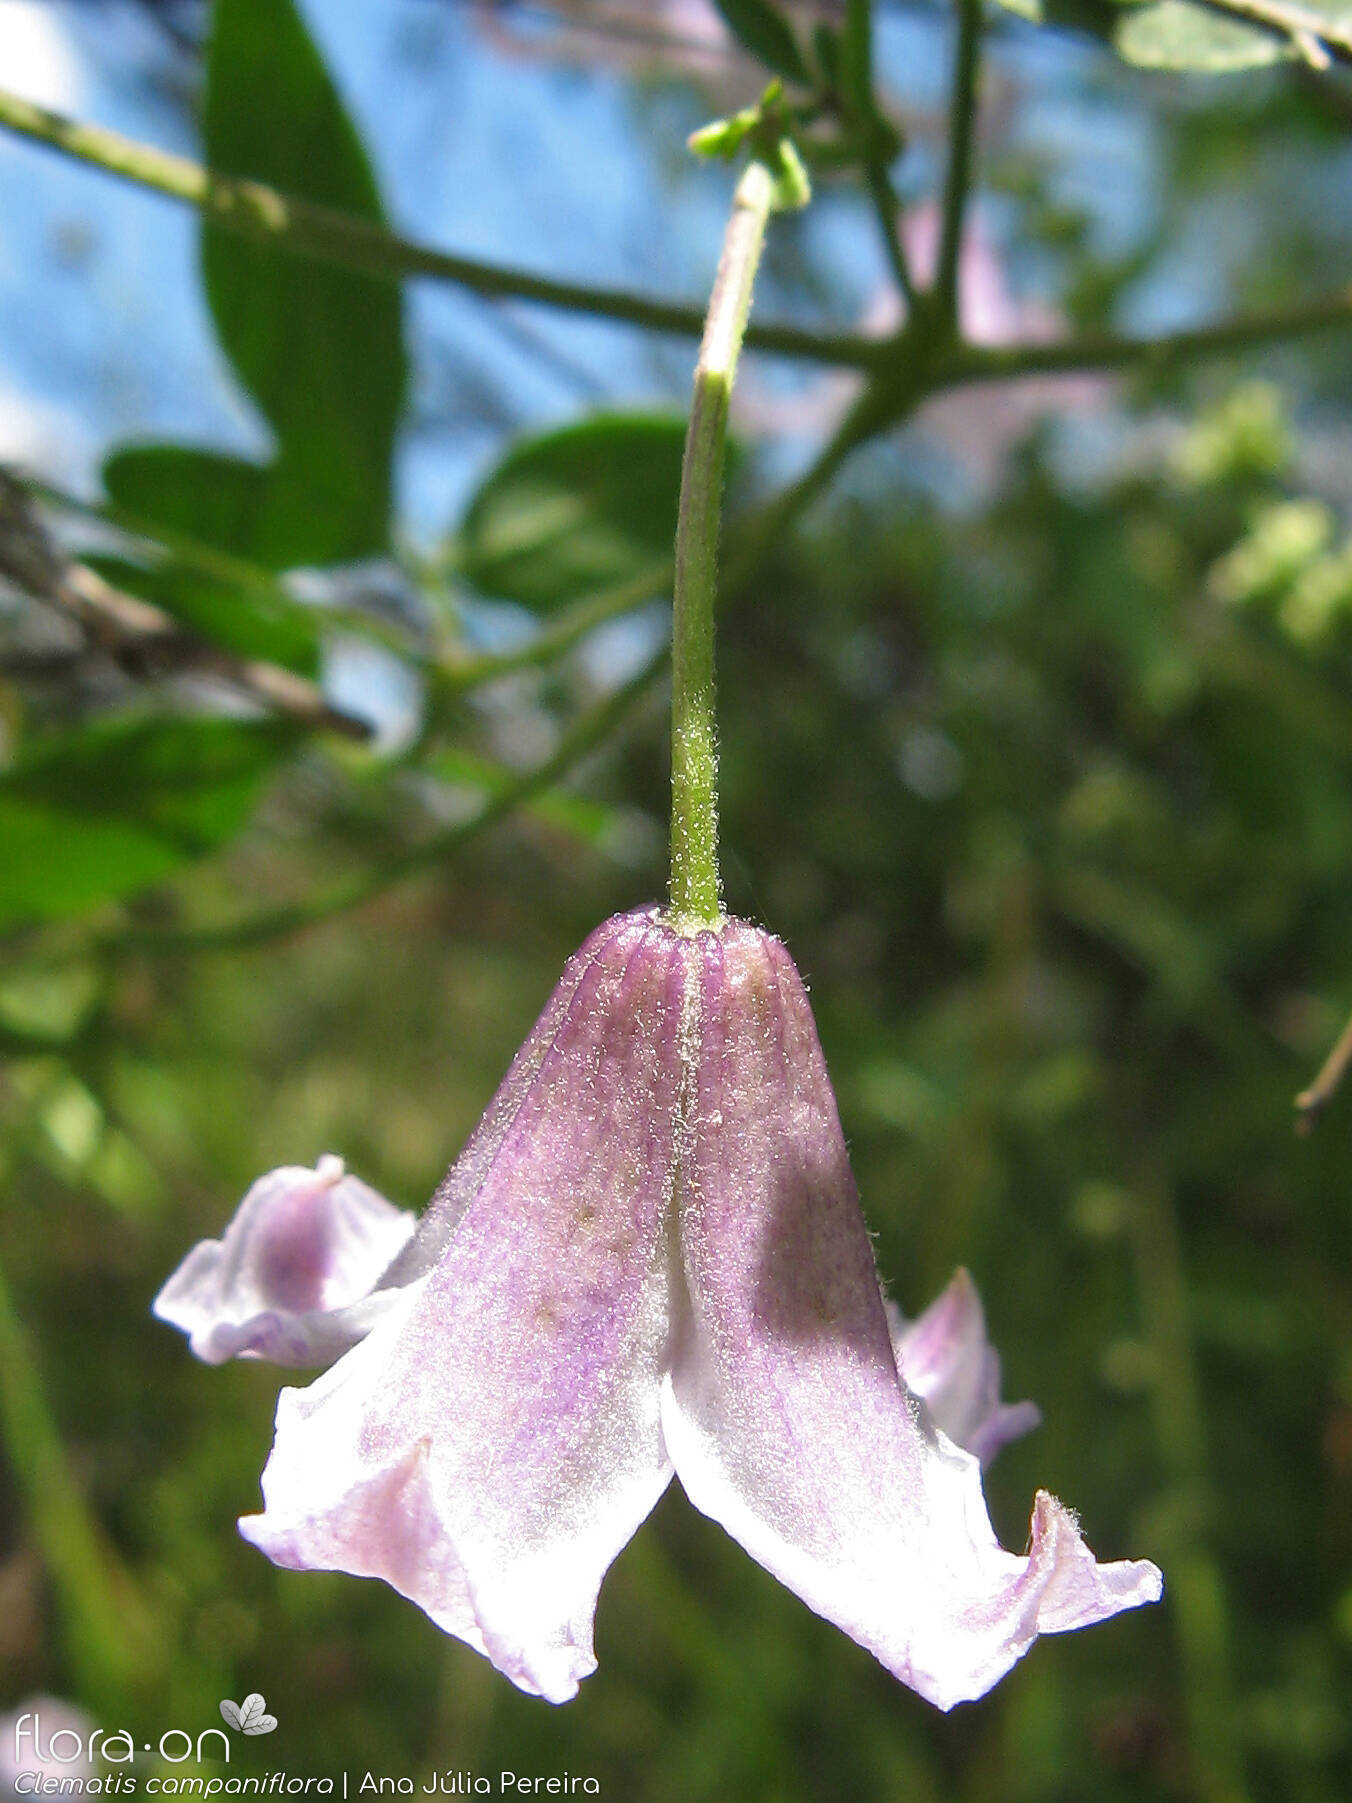 Clematis campaniflora - Flor (close-up) | Ana Júlia Pereira; CC BY-NC 4.0